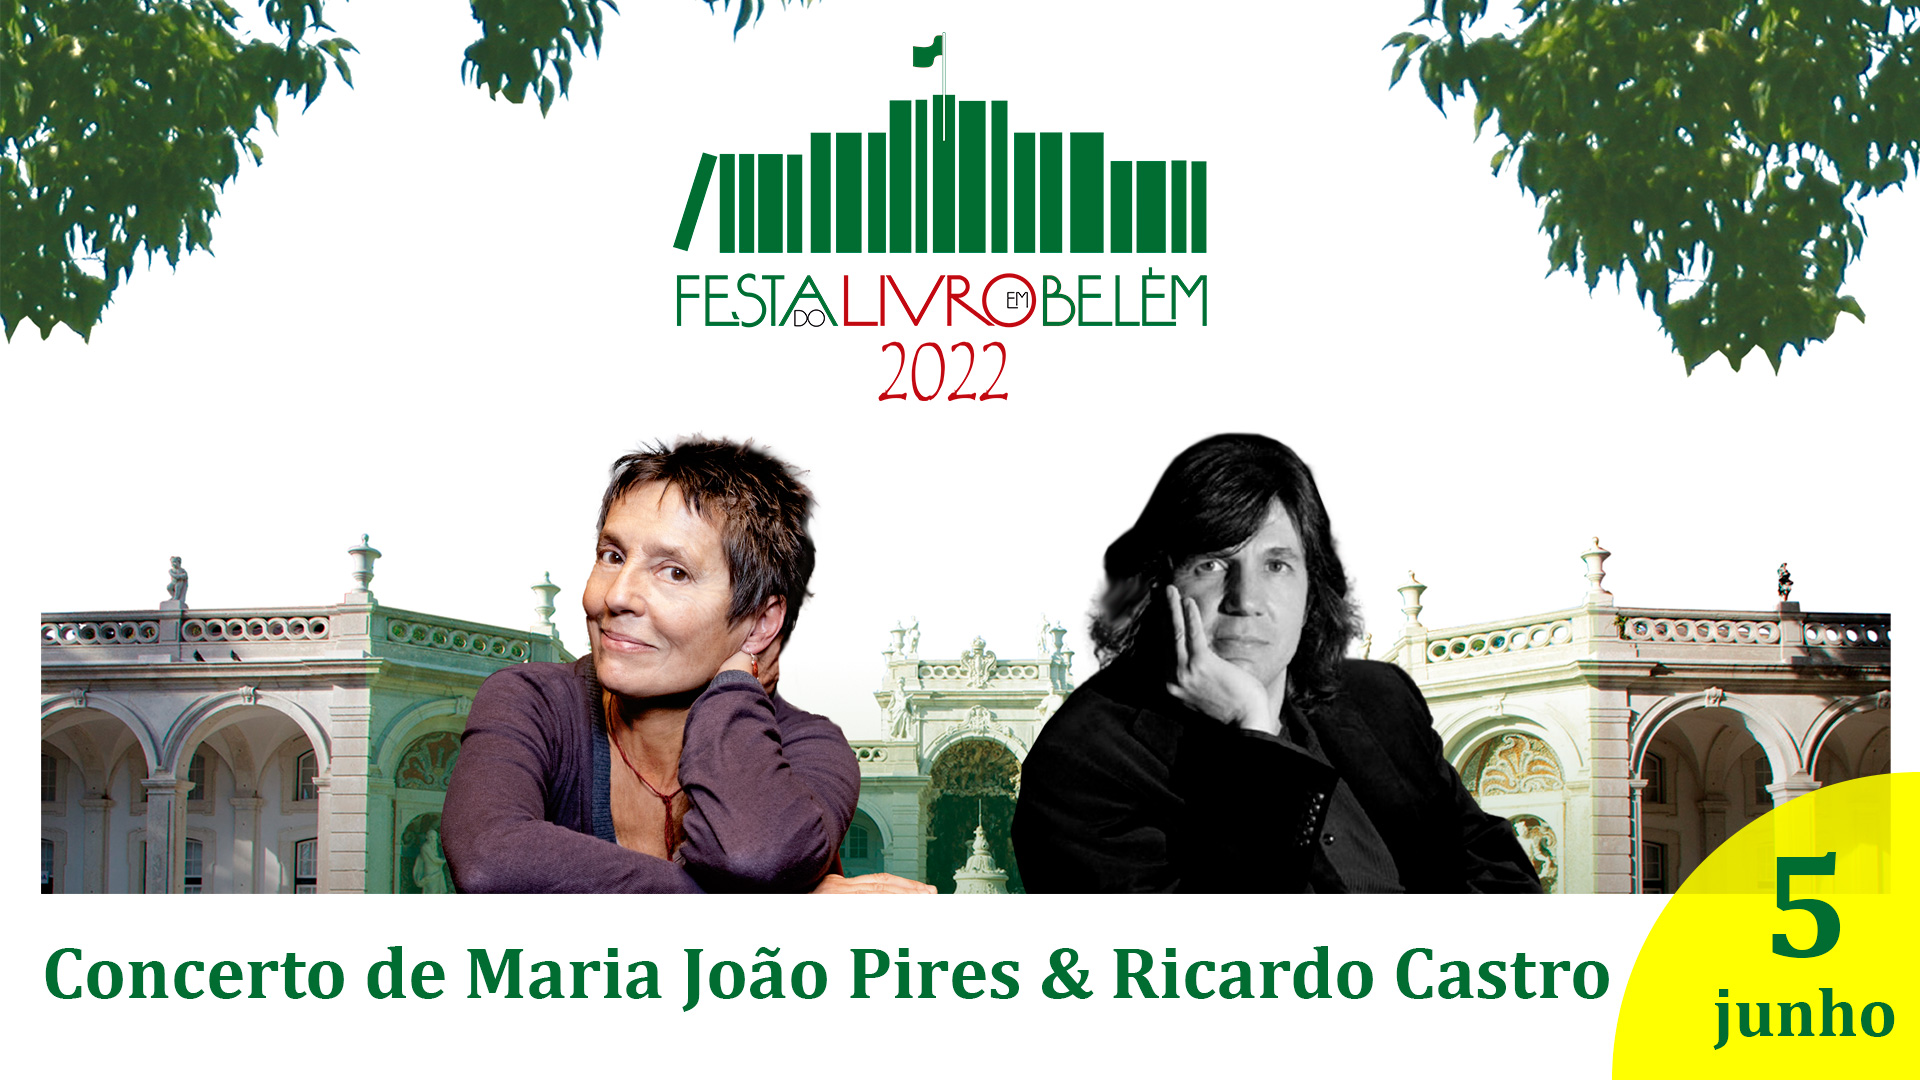 Maria João Pires & Ricardo Castro